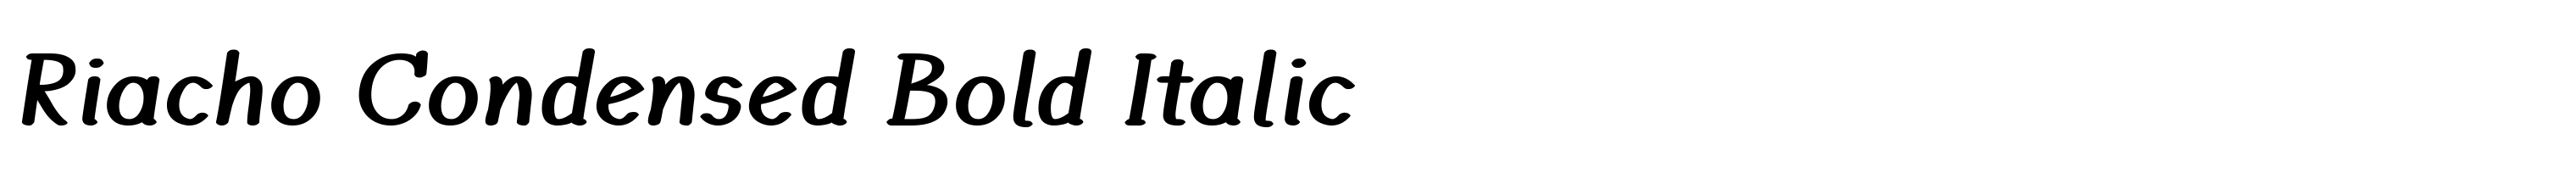 Riacho Condensed Bold Italic